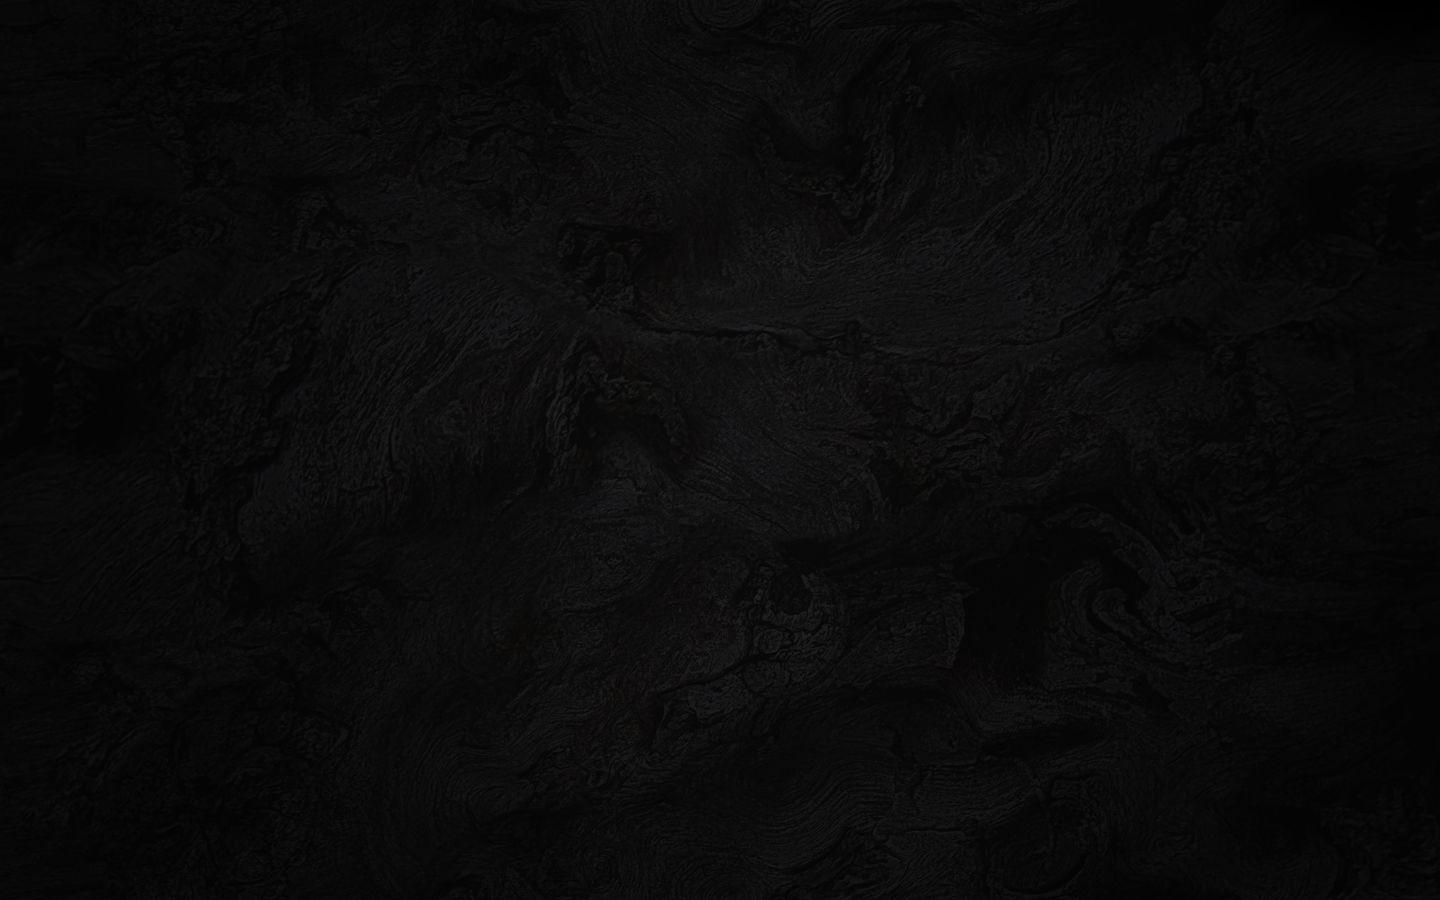 Dark Grey Background Texture 04